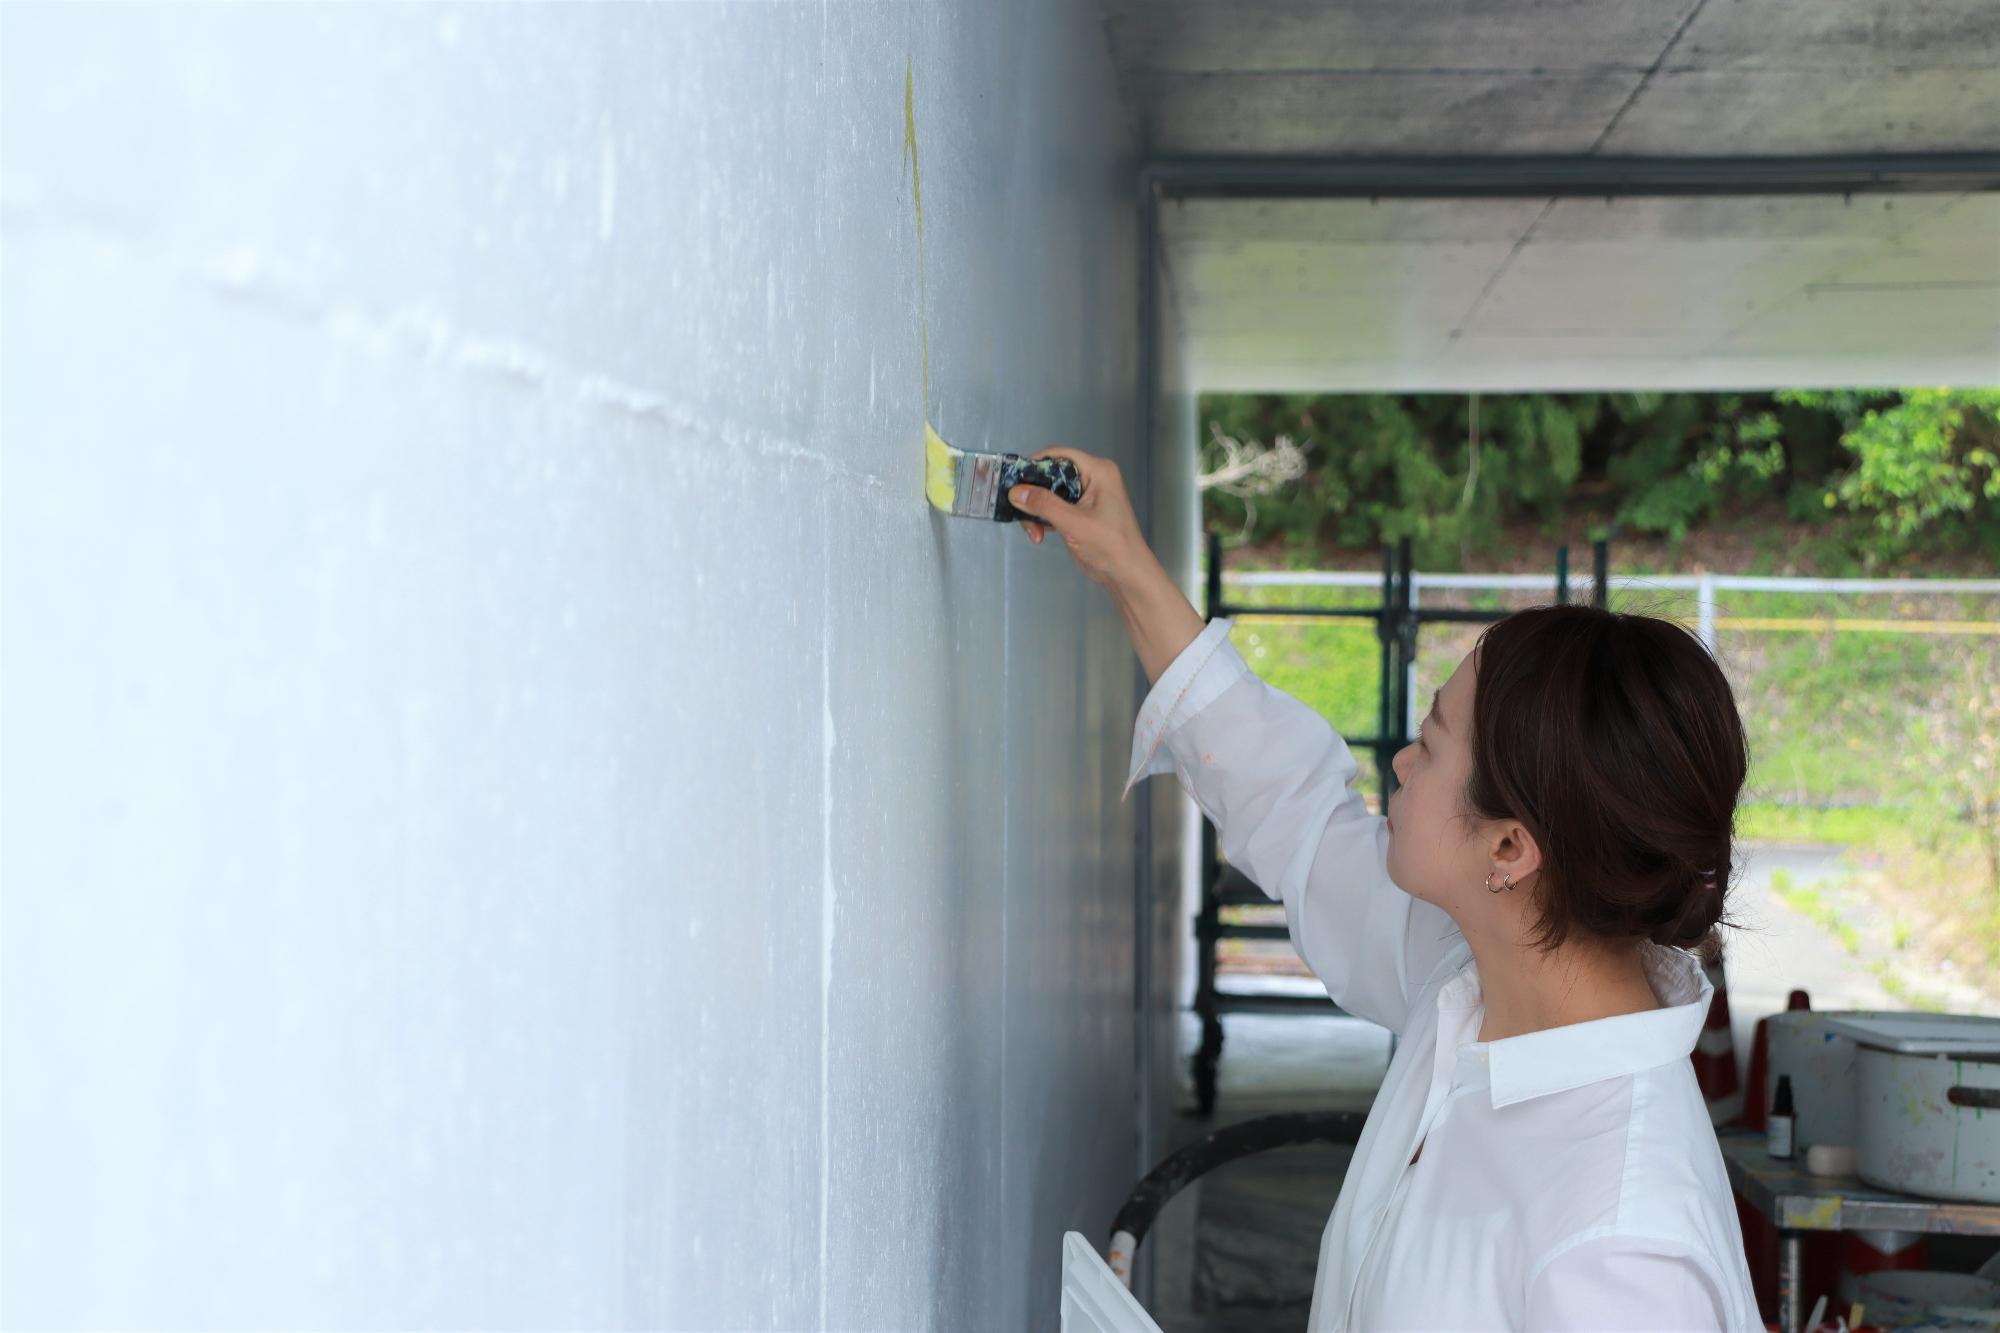 美術作家の植田志保さんがハケで通路壁面へ色を塗り始めた写真